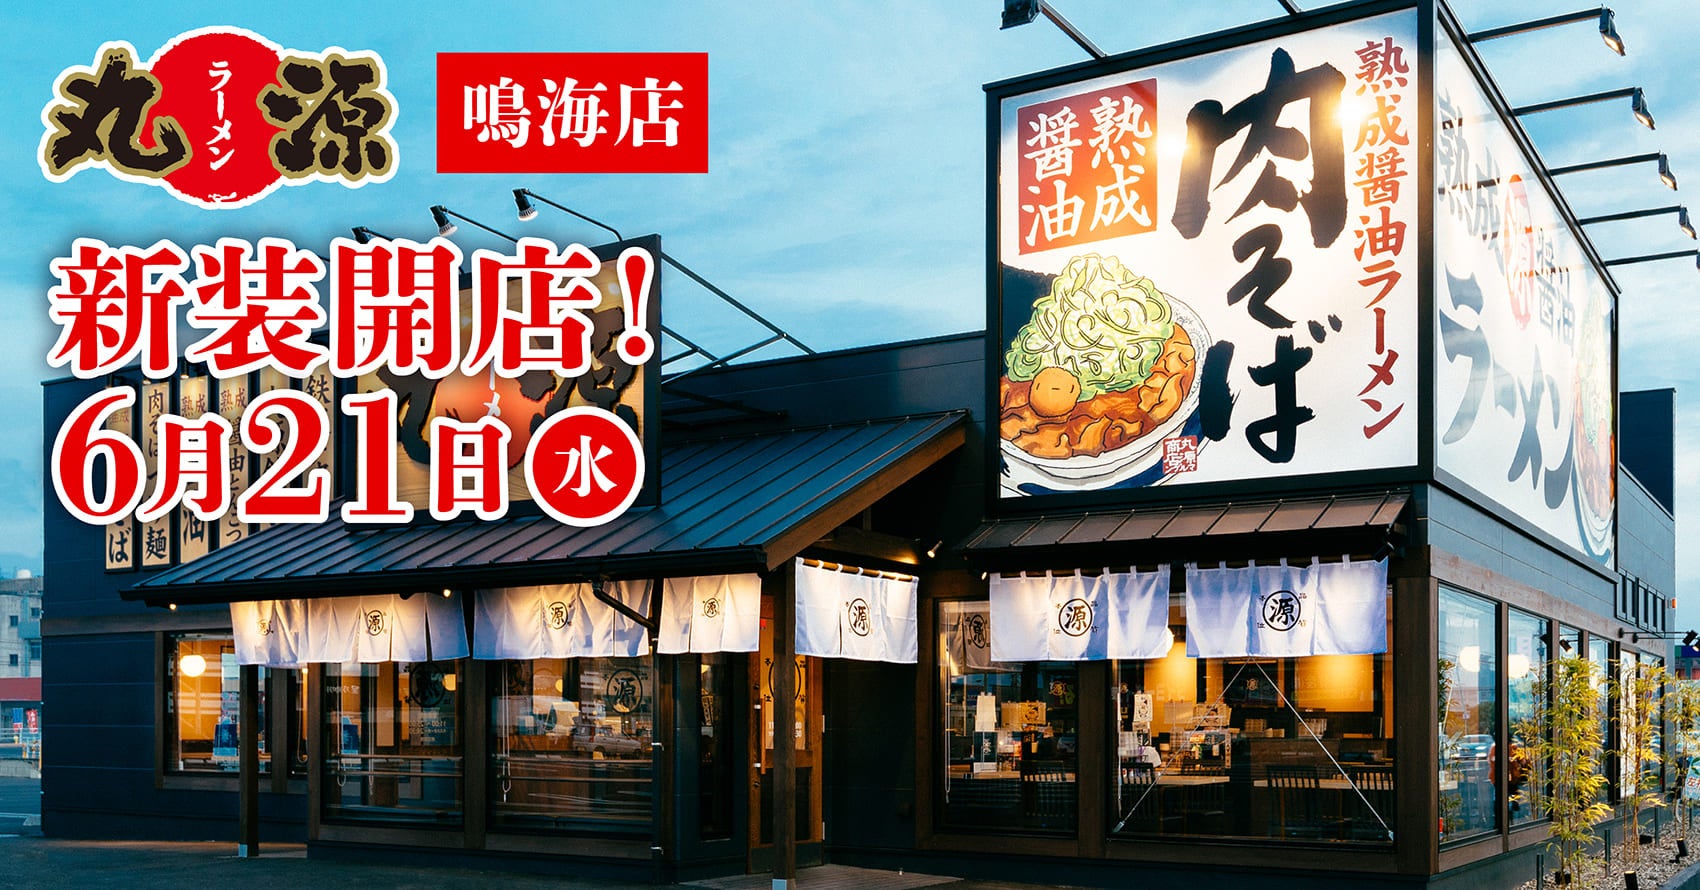 【プルマン東京田町】夏の新メニューで彩るエキゾチックな食の旅を。8月31日までの期間限定登場